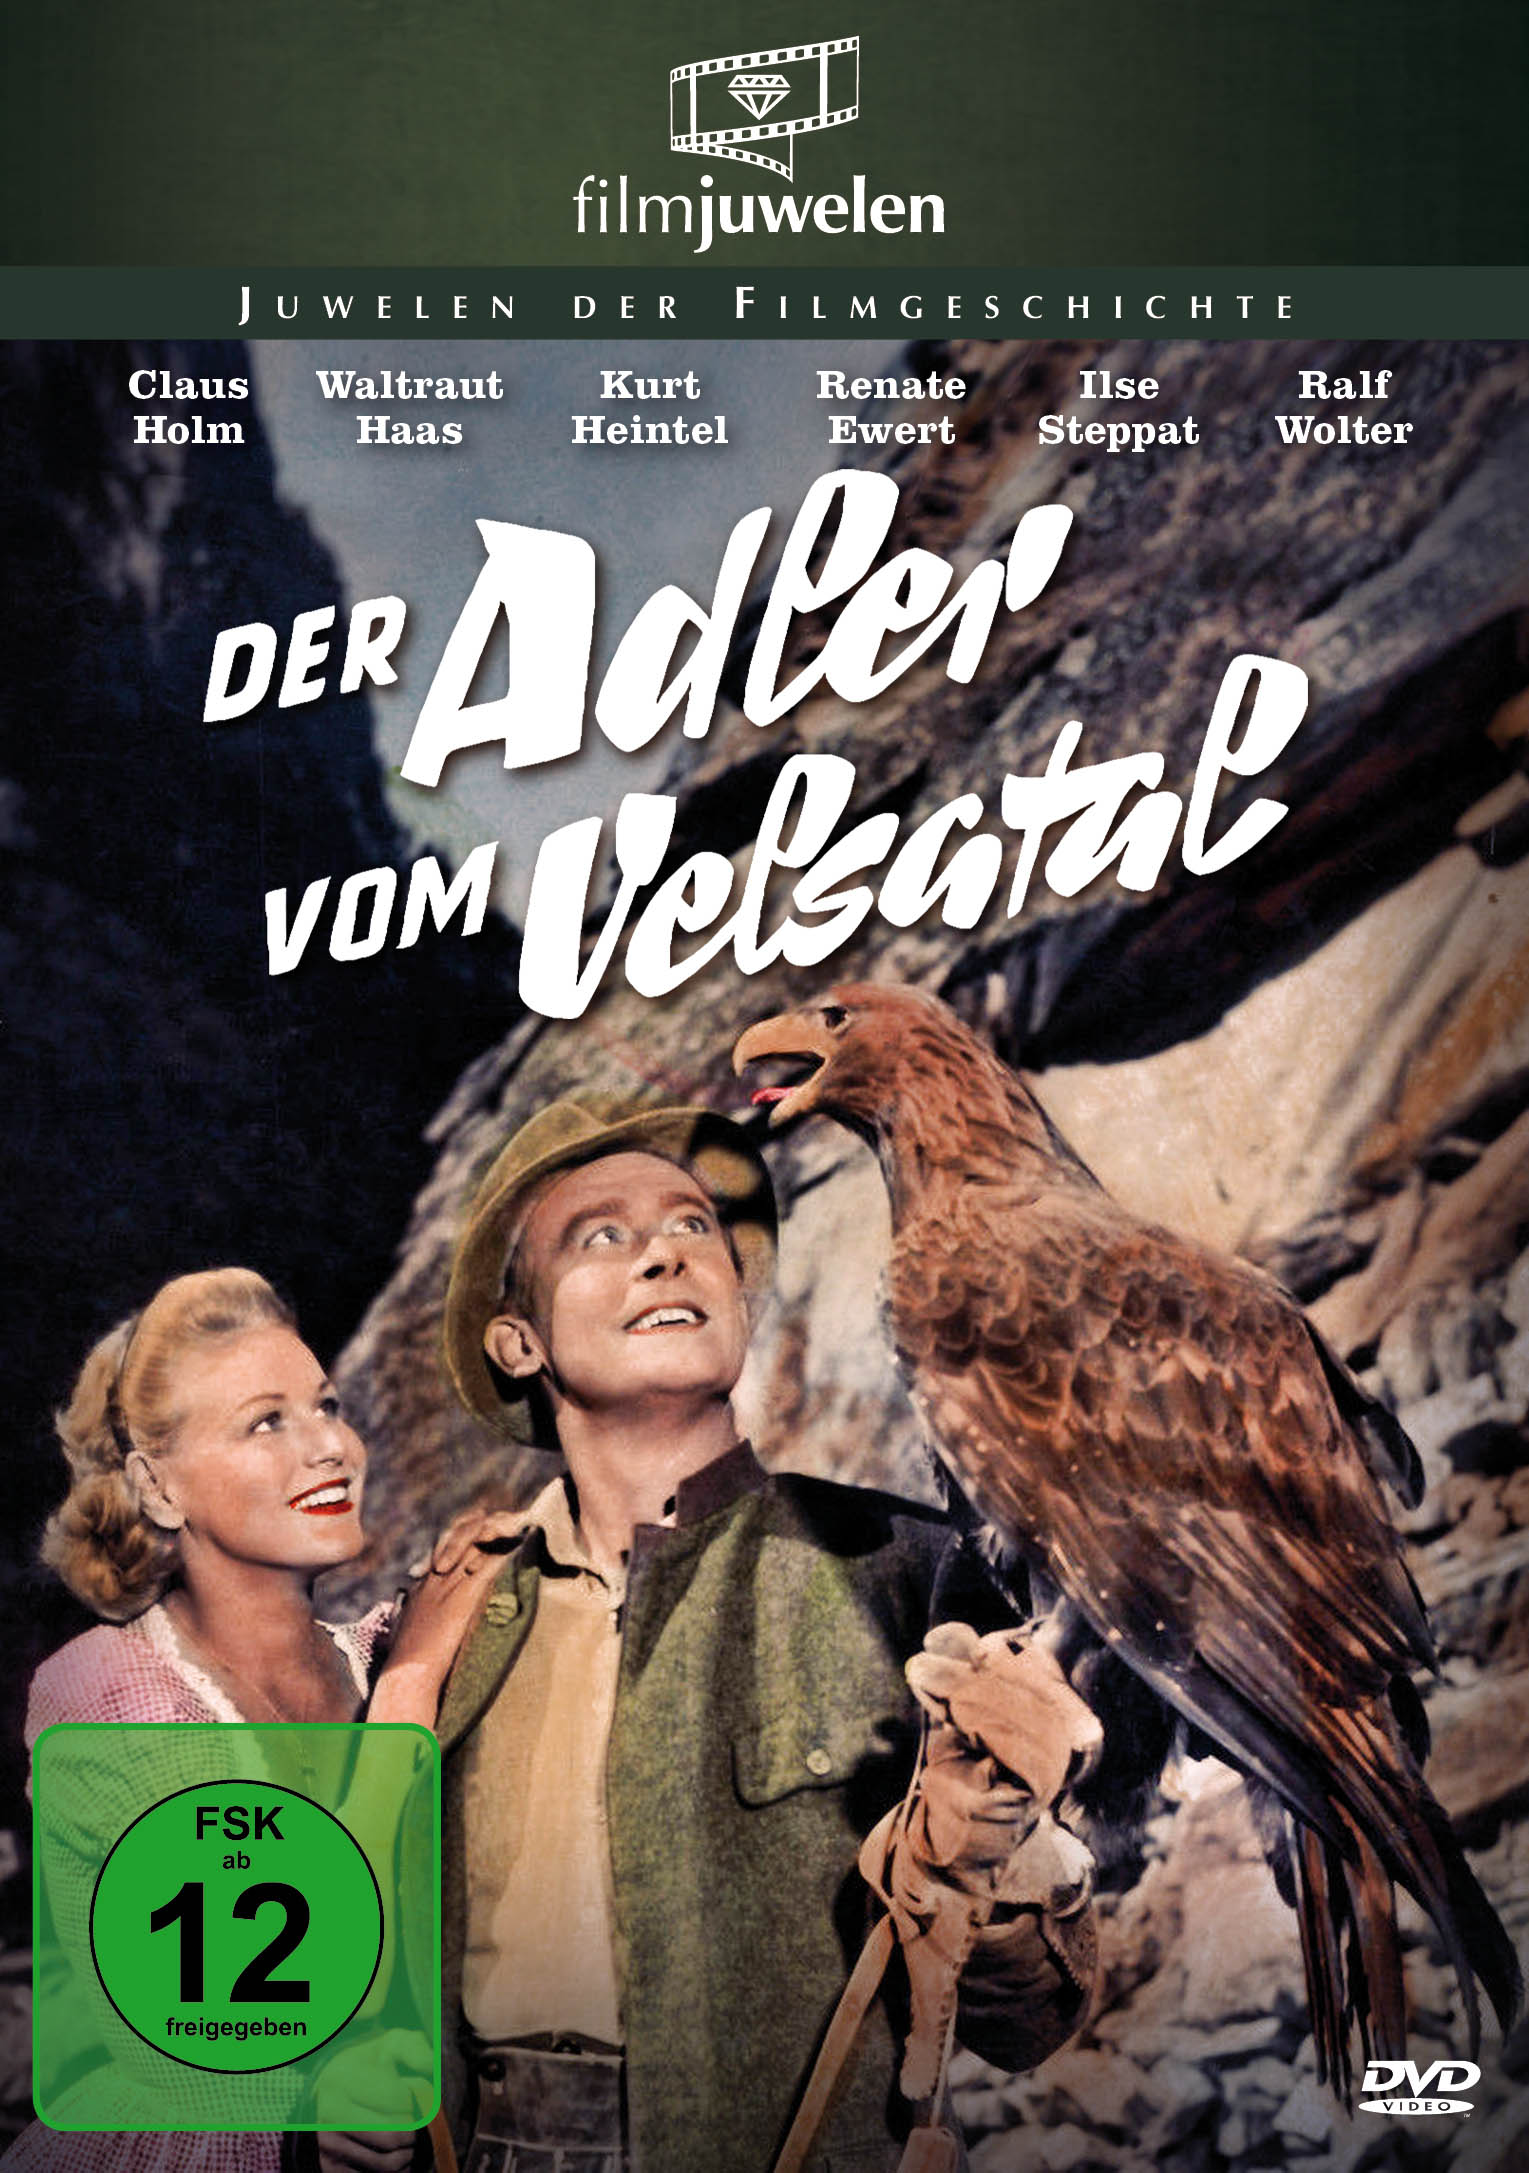 Der Adler Velsatal vom DVD